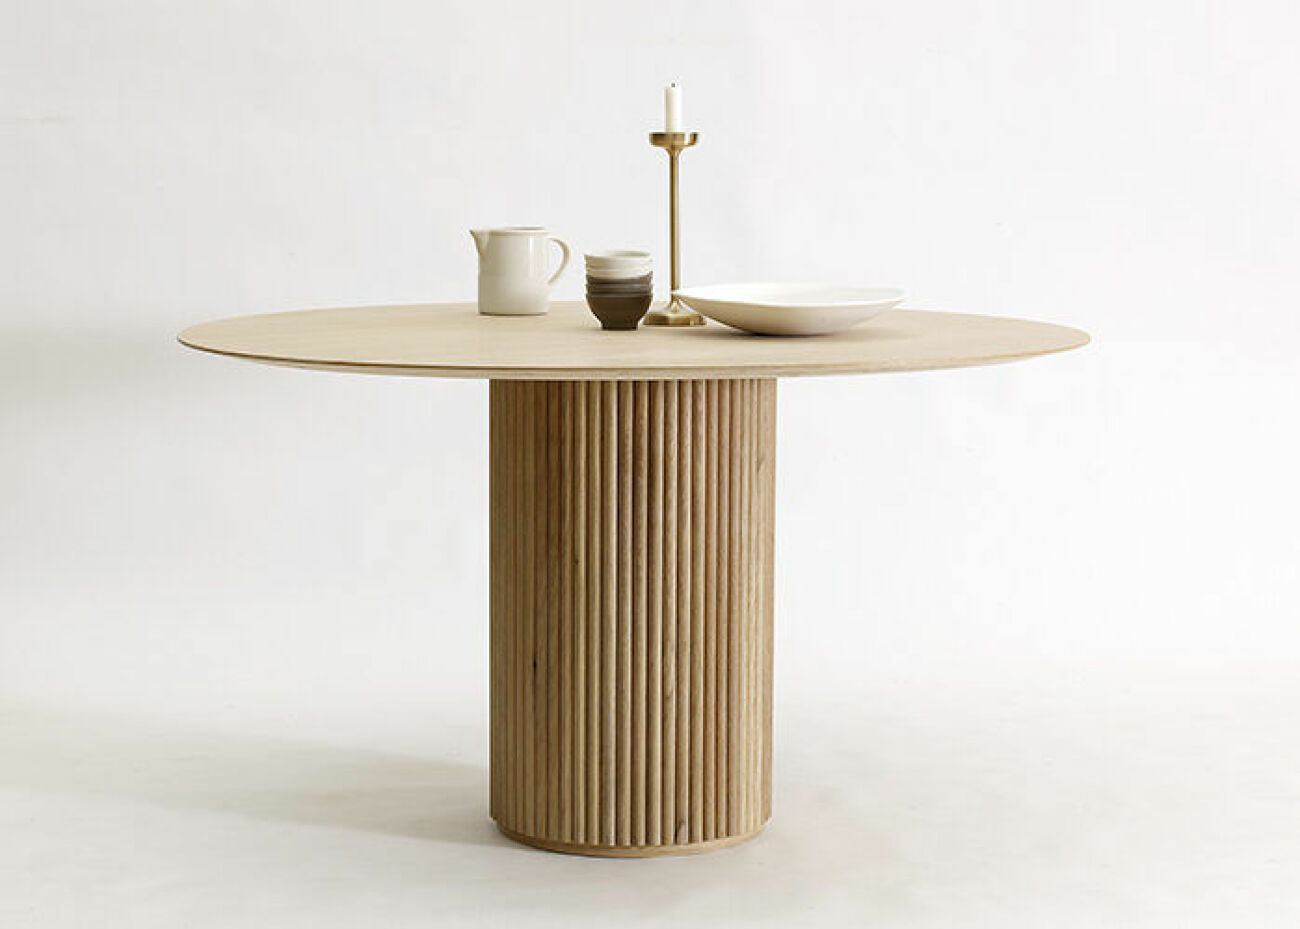 Palais-bord för Asplund av Eva Lilja Löwenhielm som är ny designchef hos Ikea